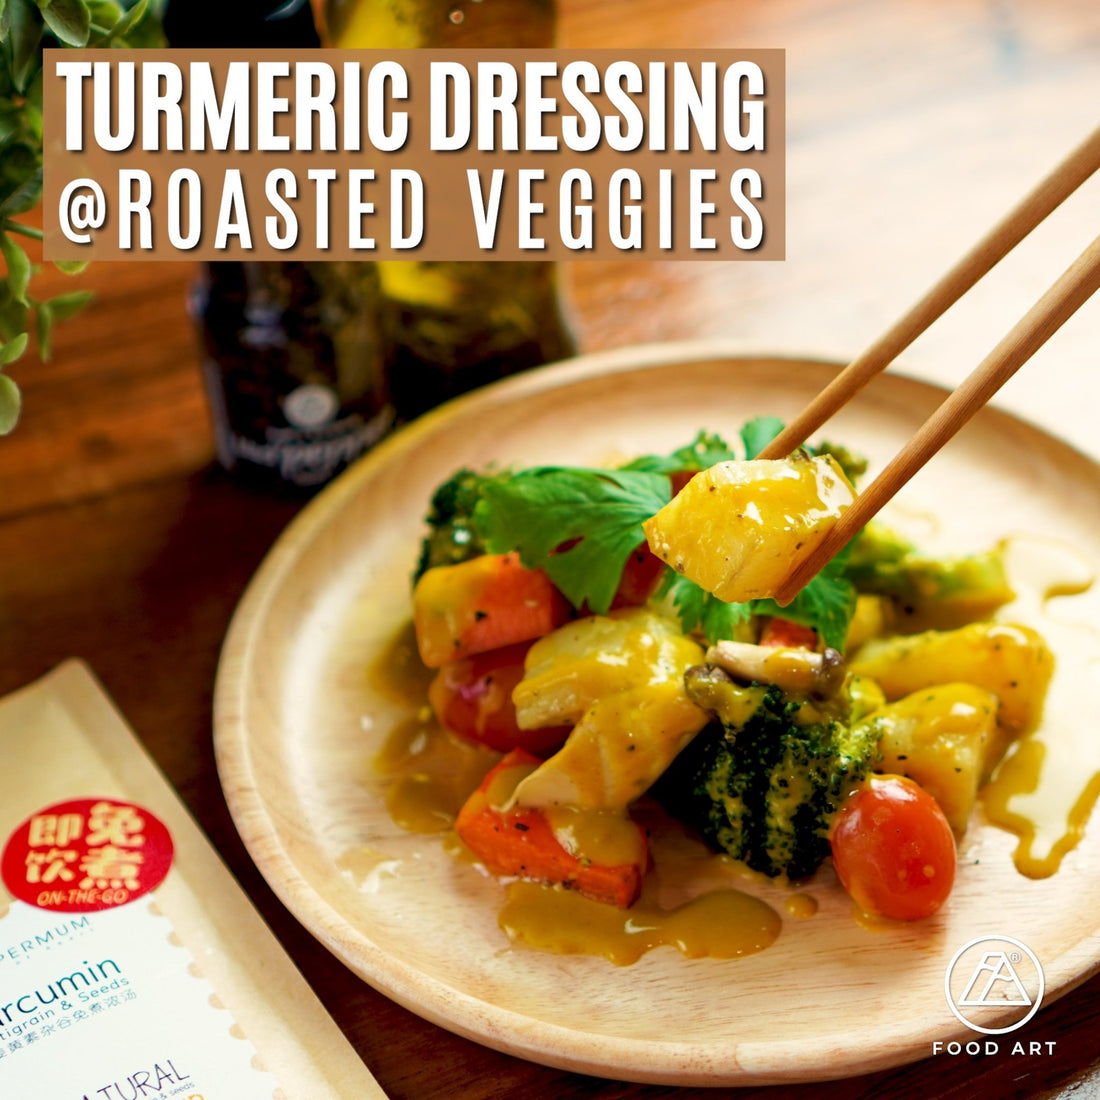 烤蔬菜配上姜黄素!! 🤩 营养又健康的食谱 👍🏼 || Delicious grilled vegetables with Turmeric Curcumin as dressing 😍 - Food Art Store